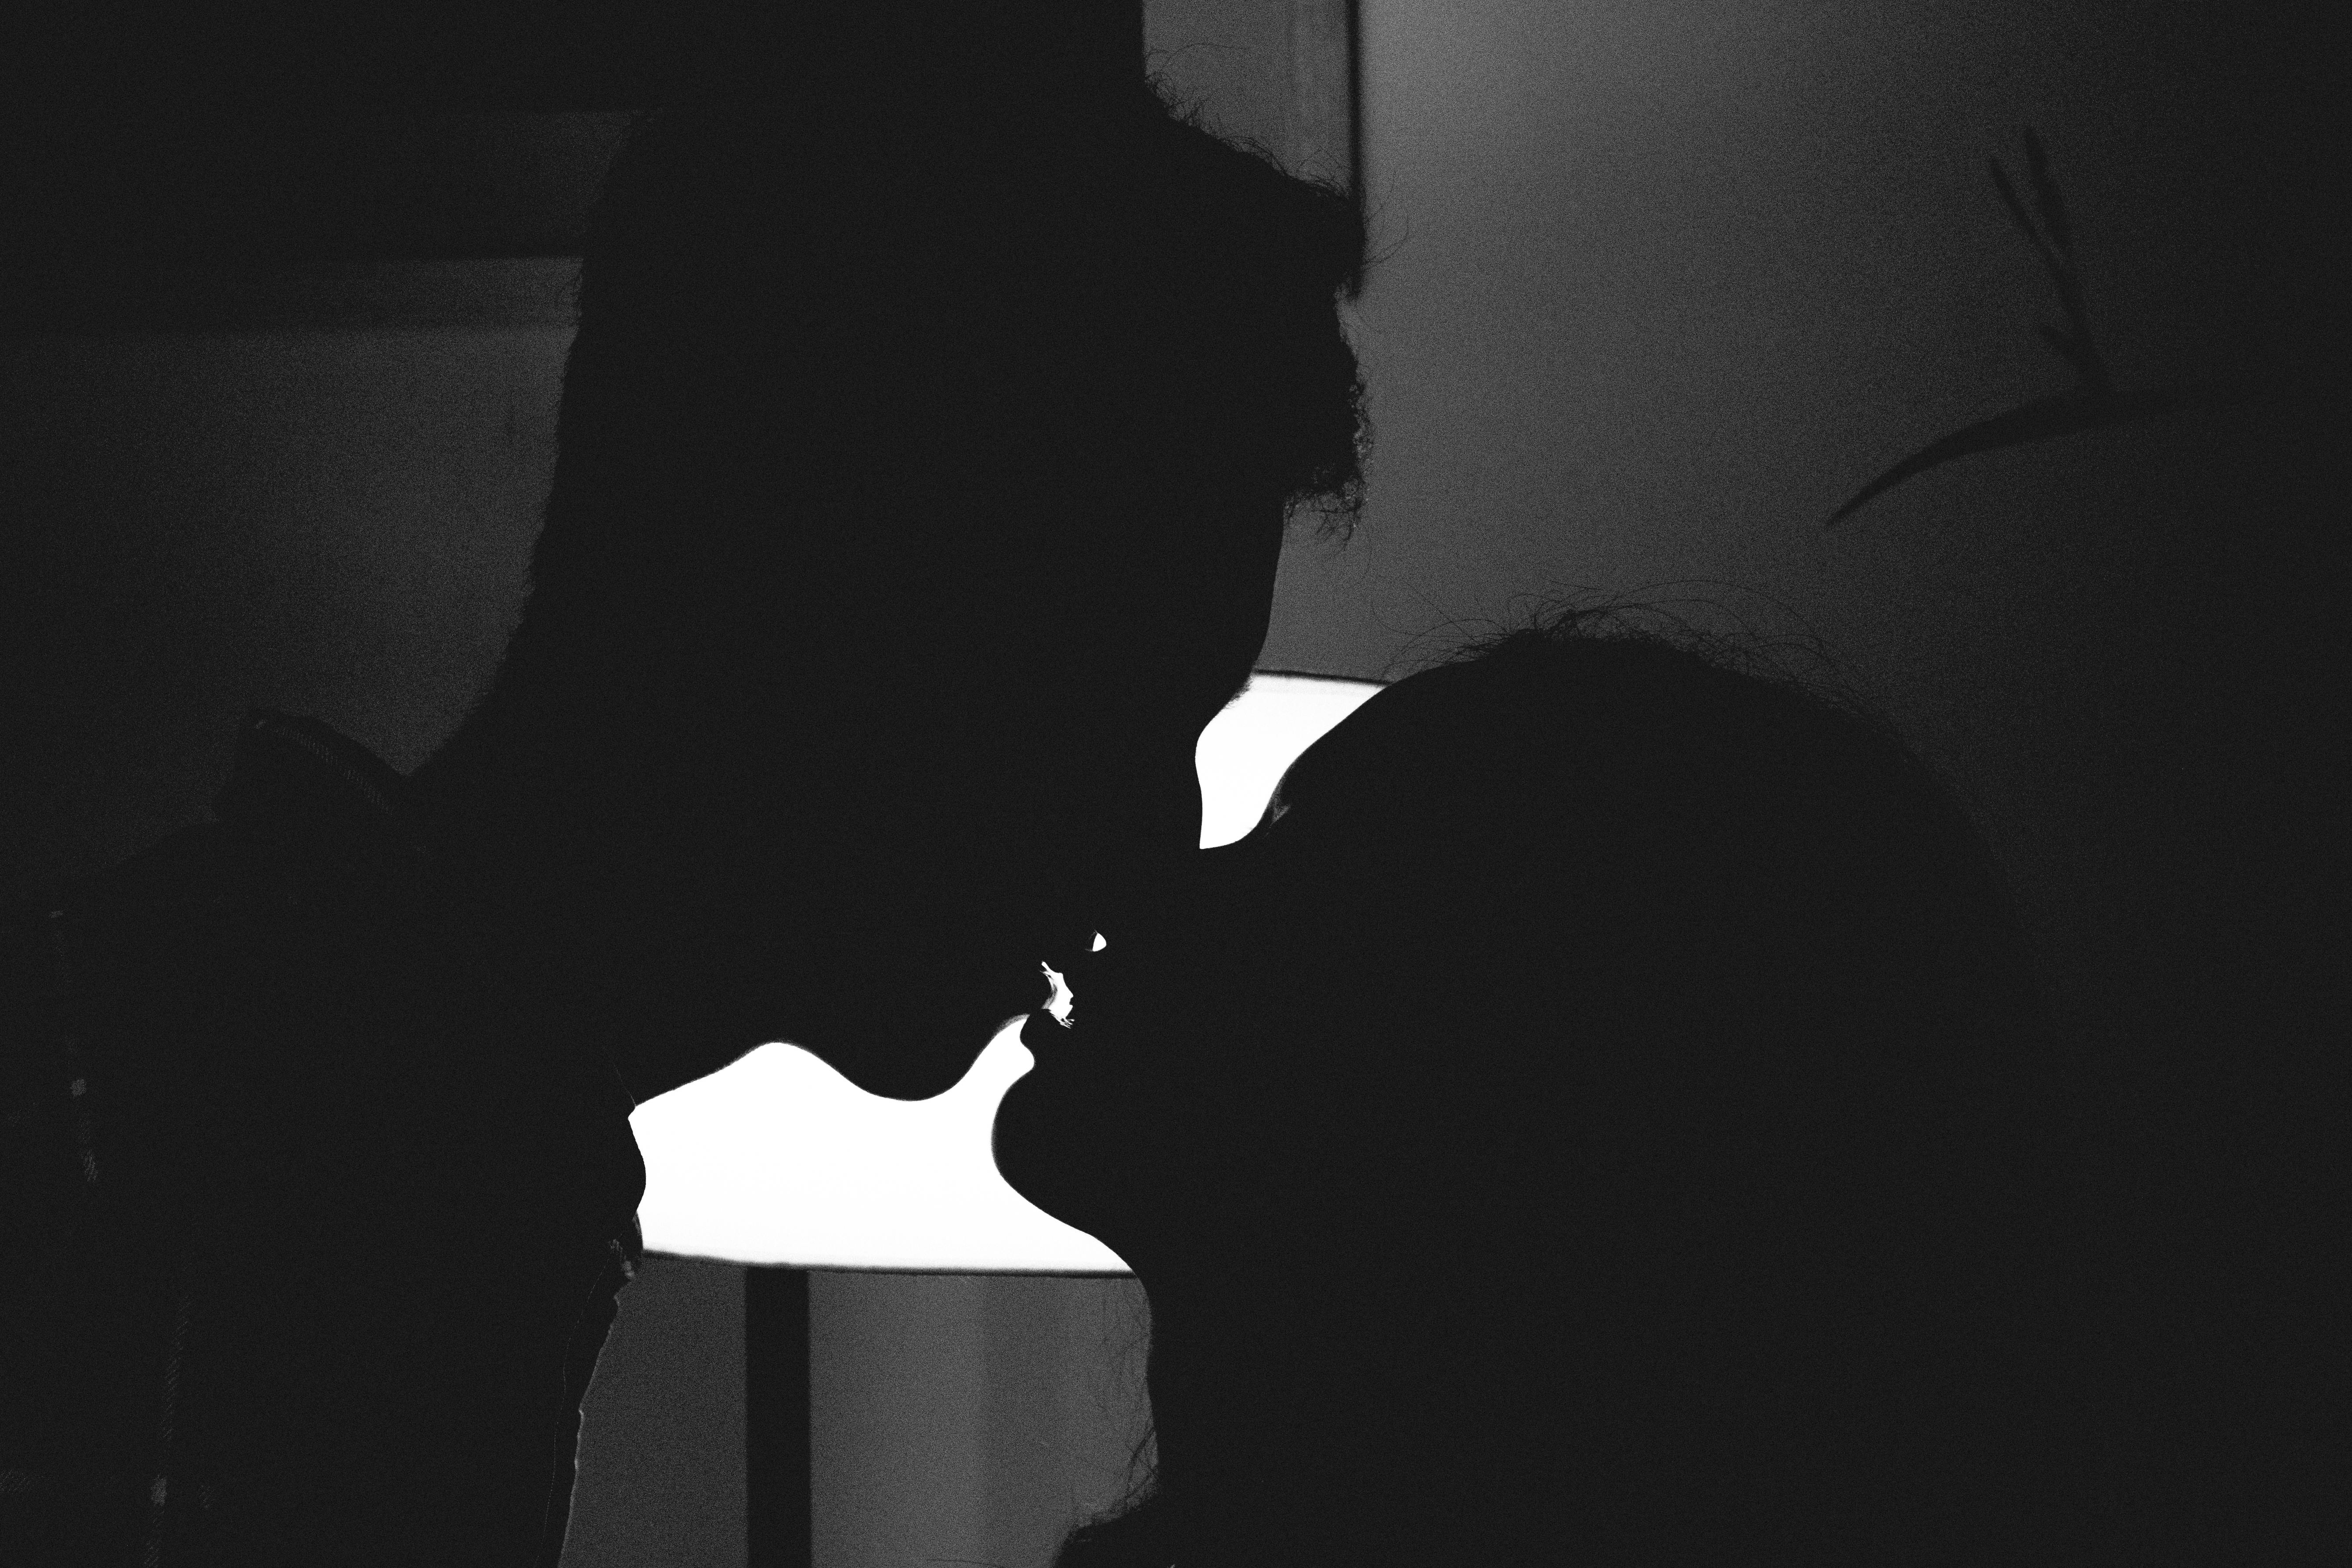 Una pareja a punto de besarse | Fuente: Pexels